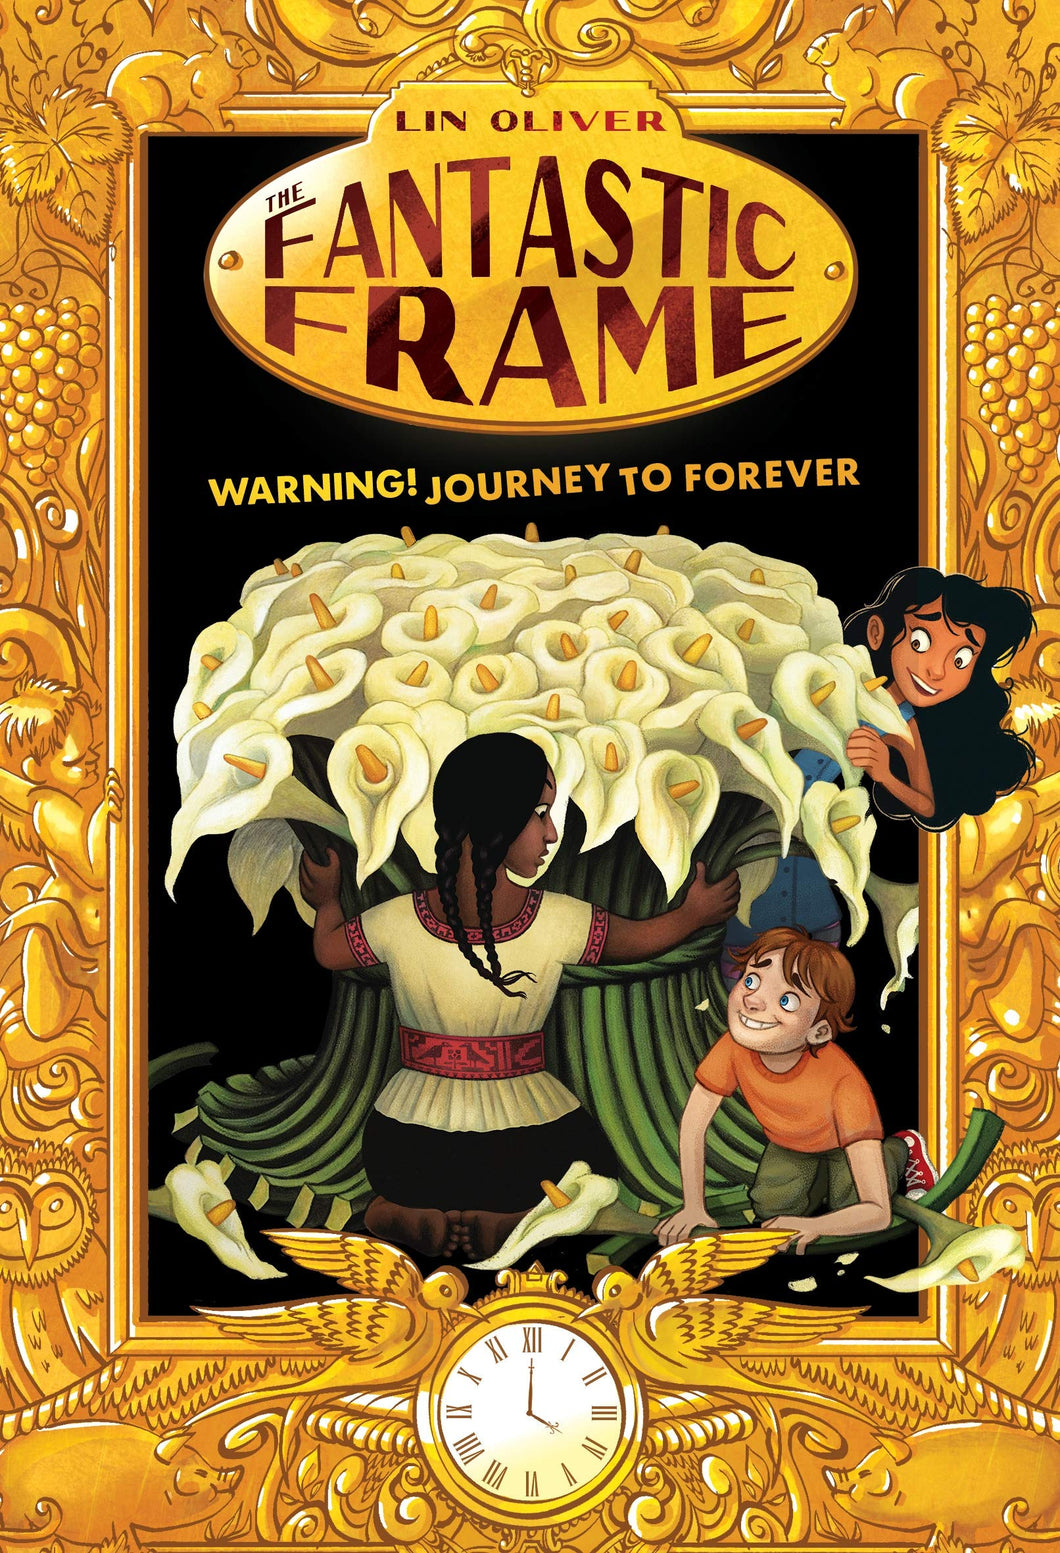 Warning! Journey to Forever (Fantastic Frame Book 5)